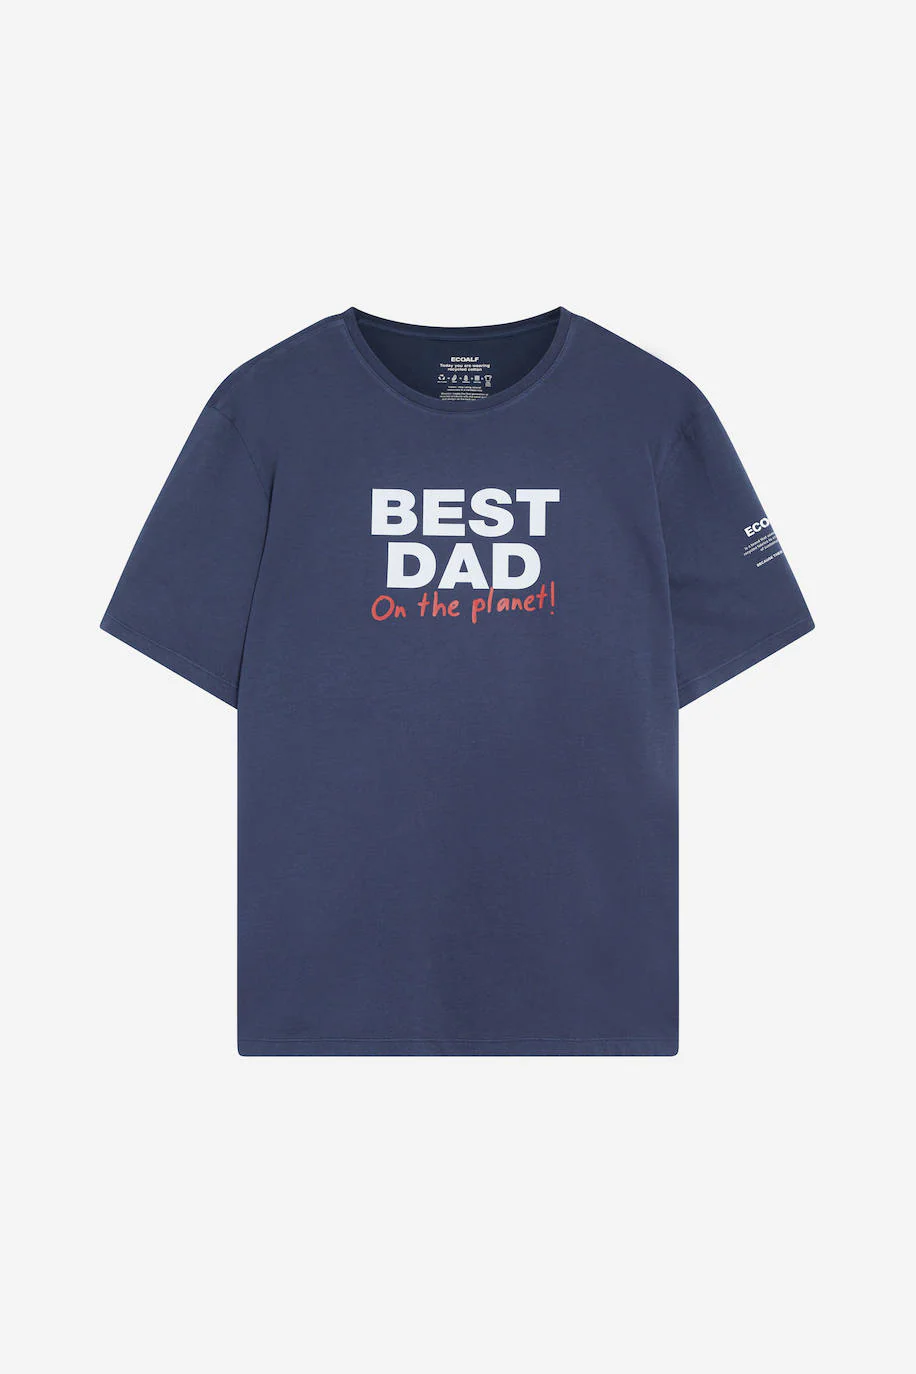 Una camisa azul marino siempre es una buena opción para regalarle a papá.